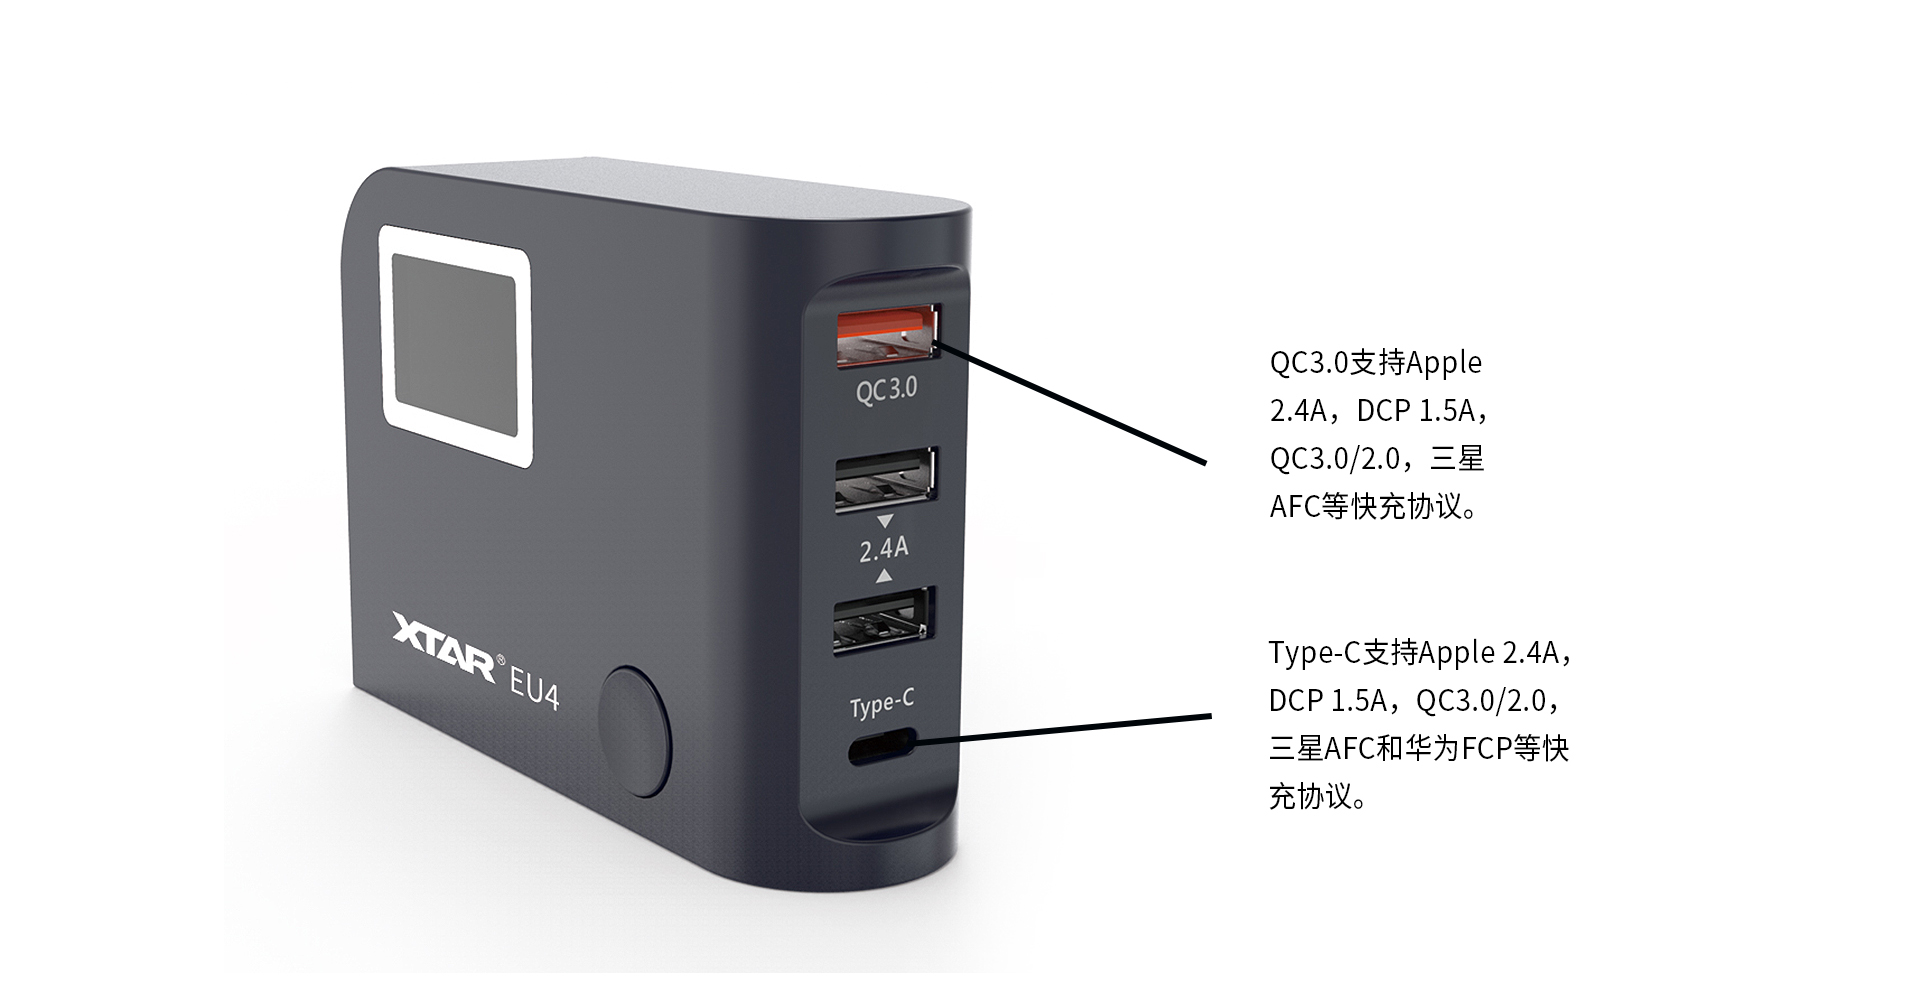 EU4 64W 4口USB充电器